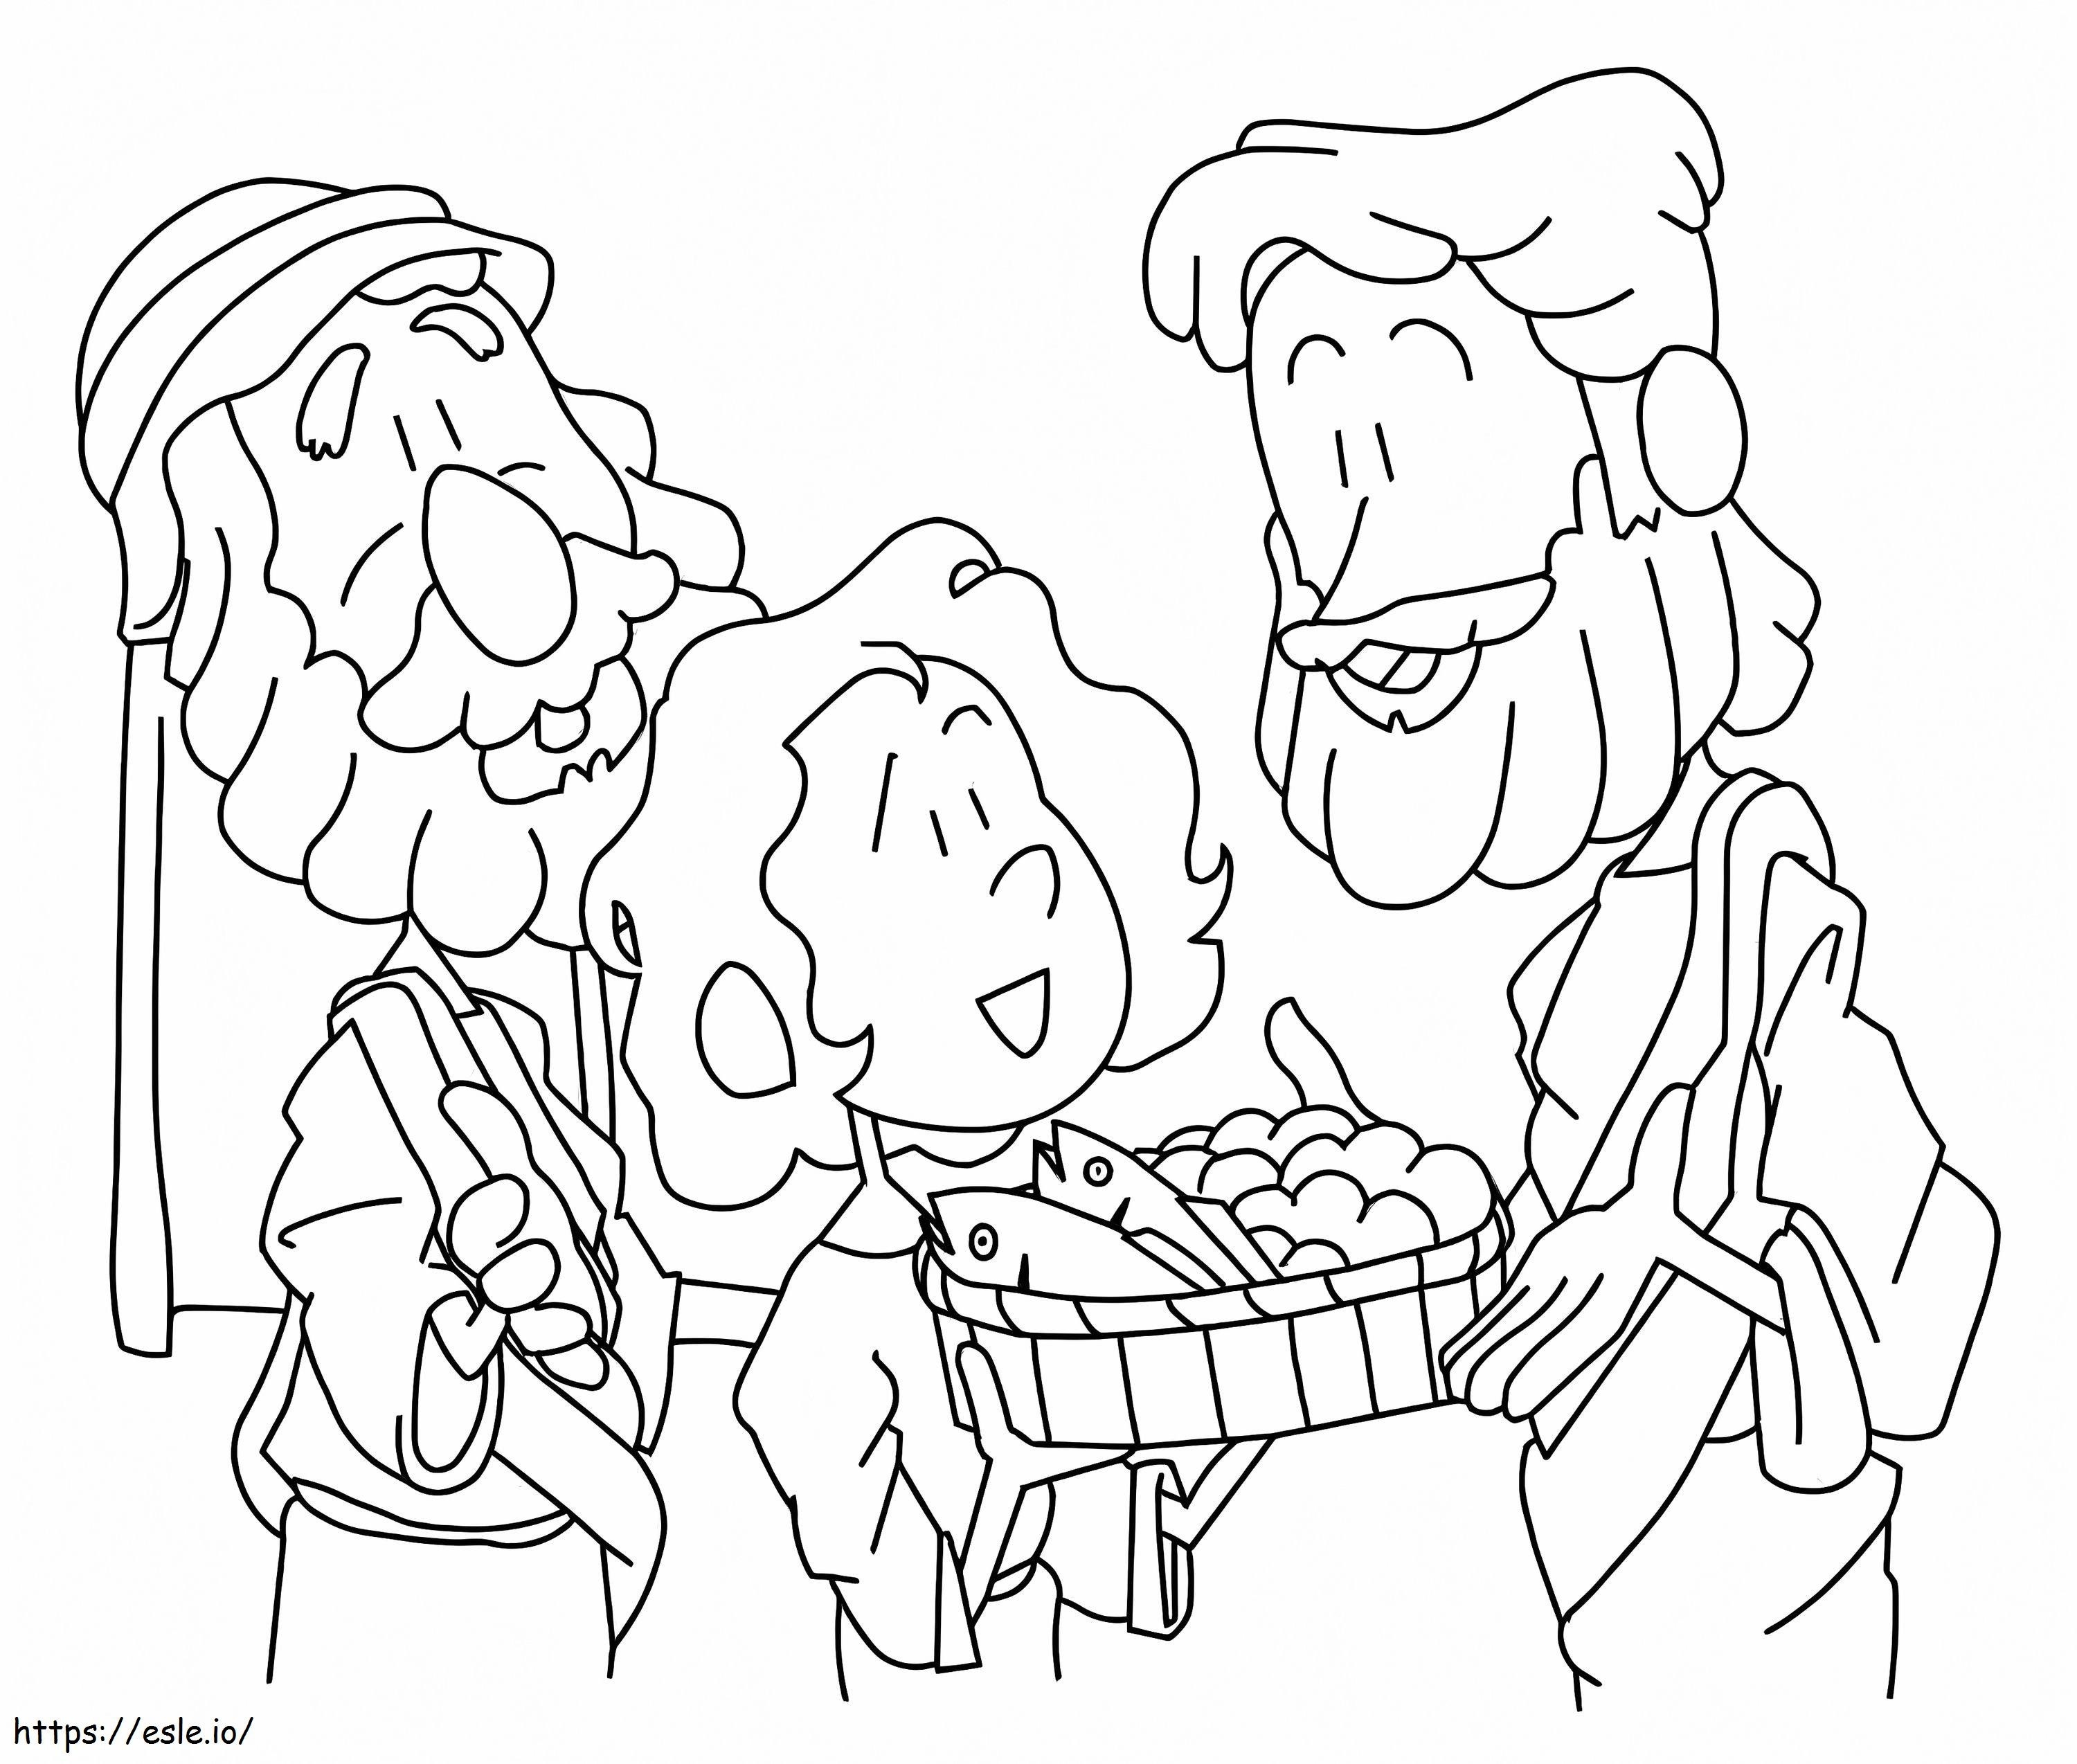 Jesus speist 5000 kostenlos ausmalbilder